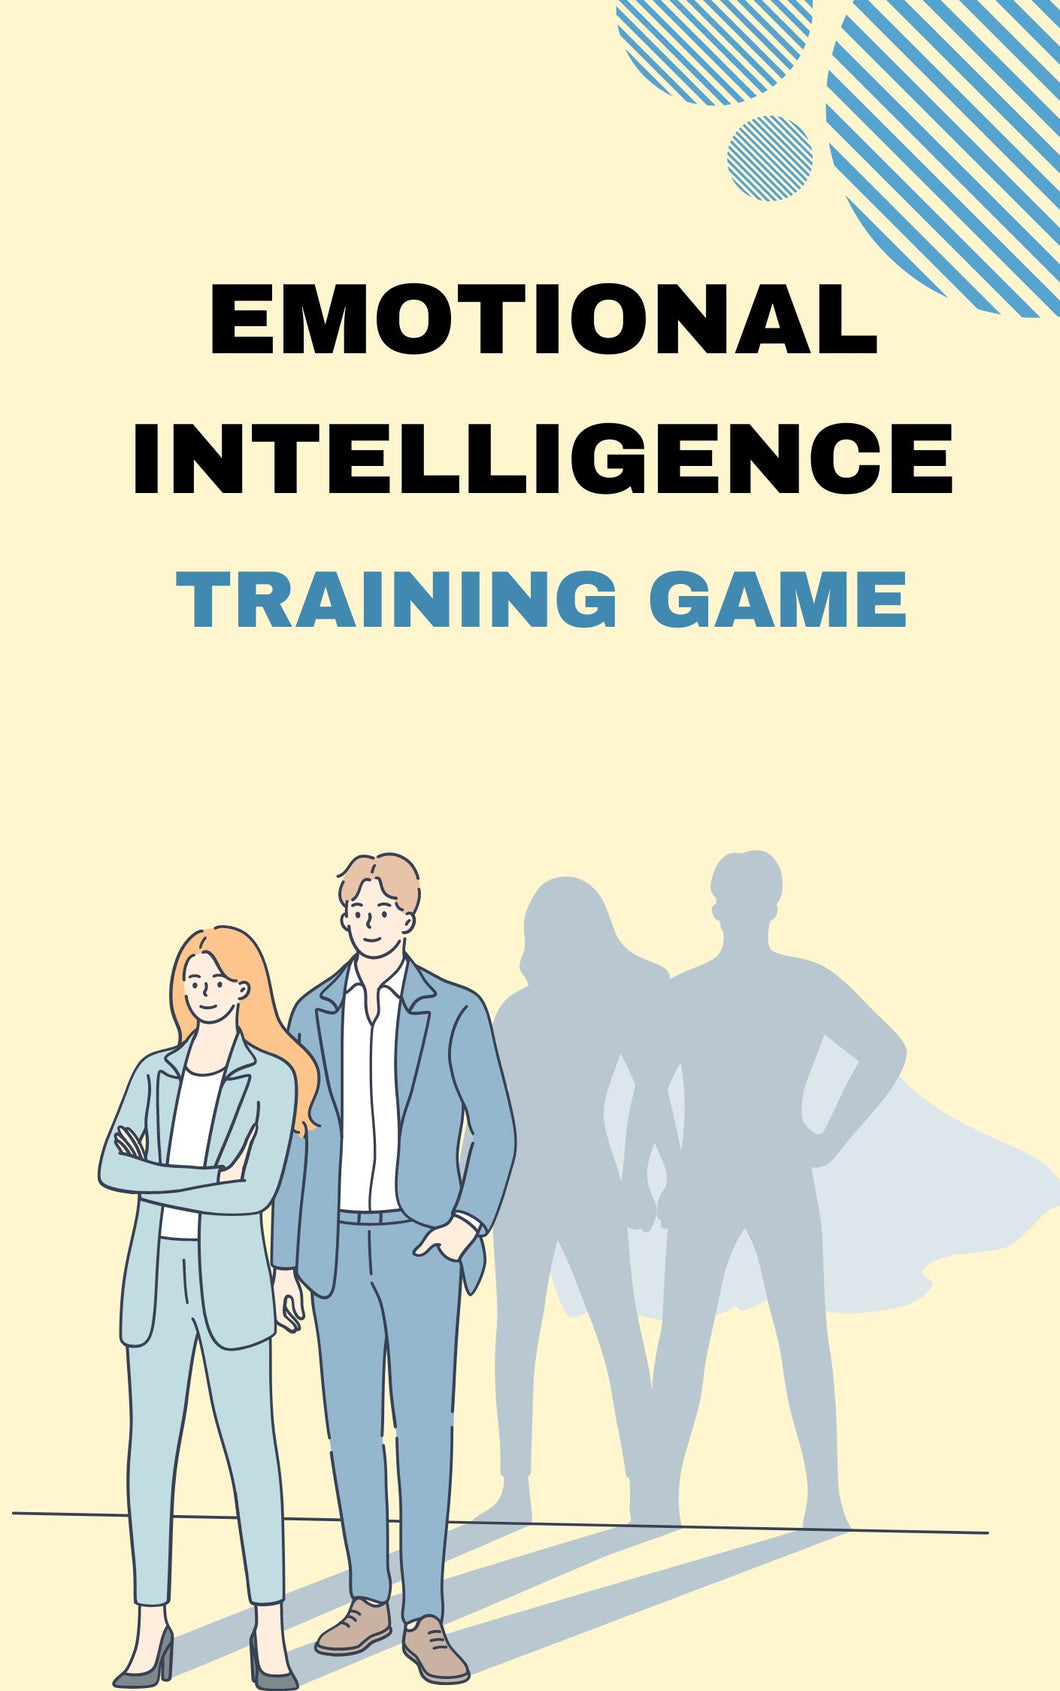 The Emotional Intelligence Training Game